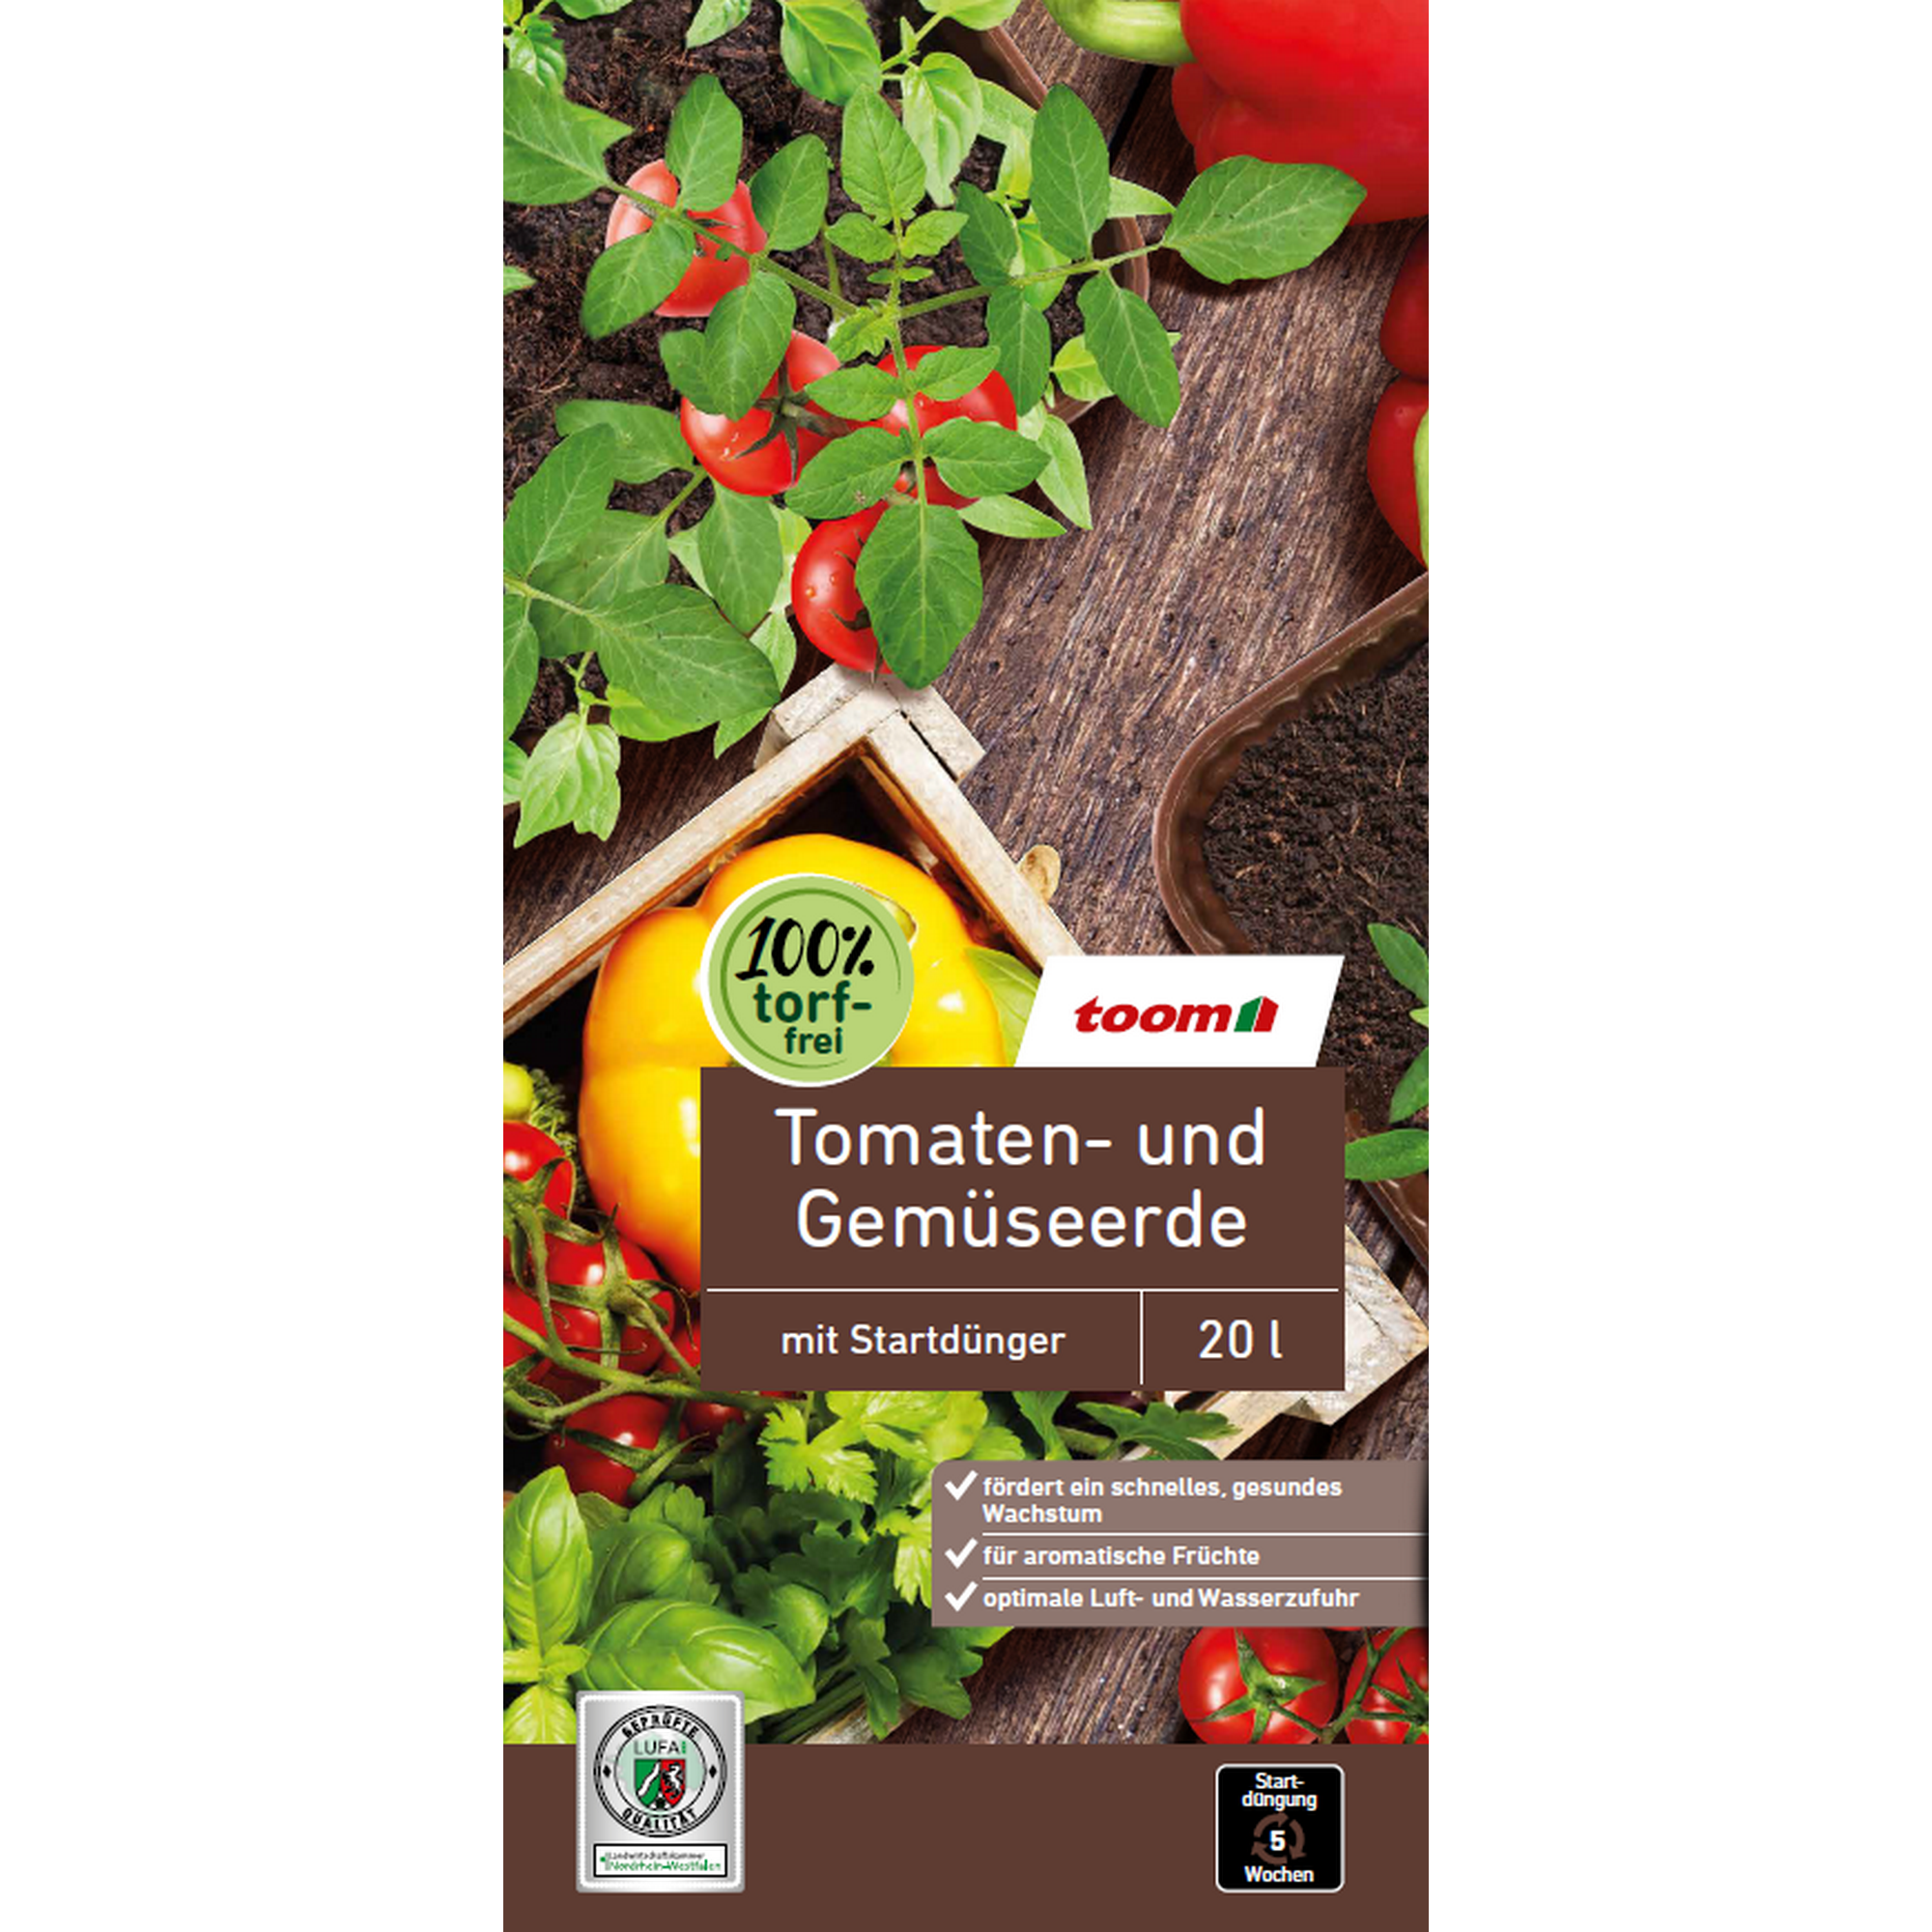 Tomaten- und Gemüseerde torffrei 20 l + product picture